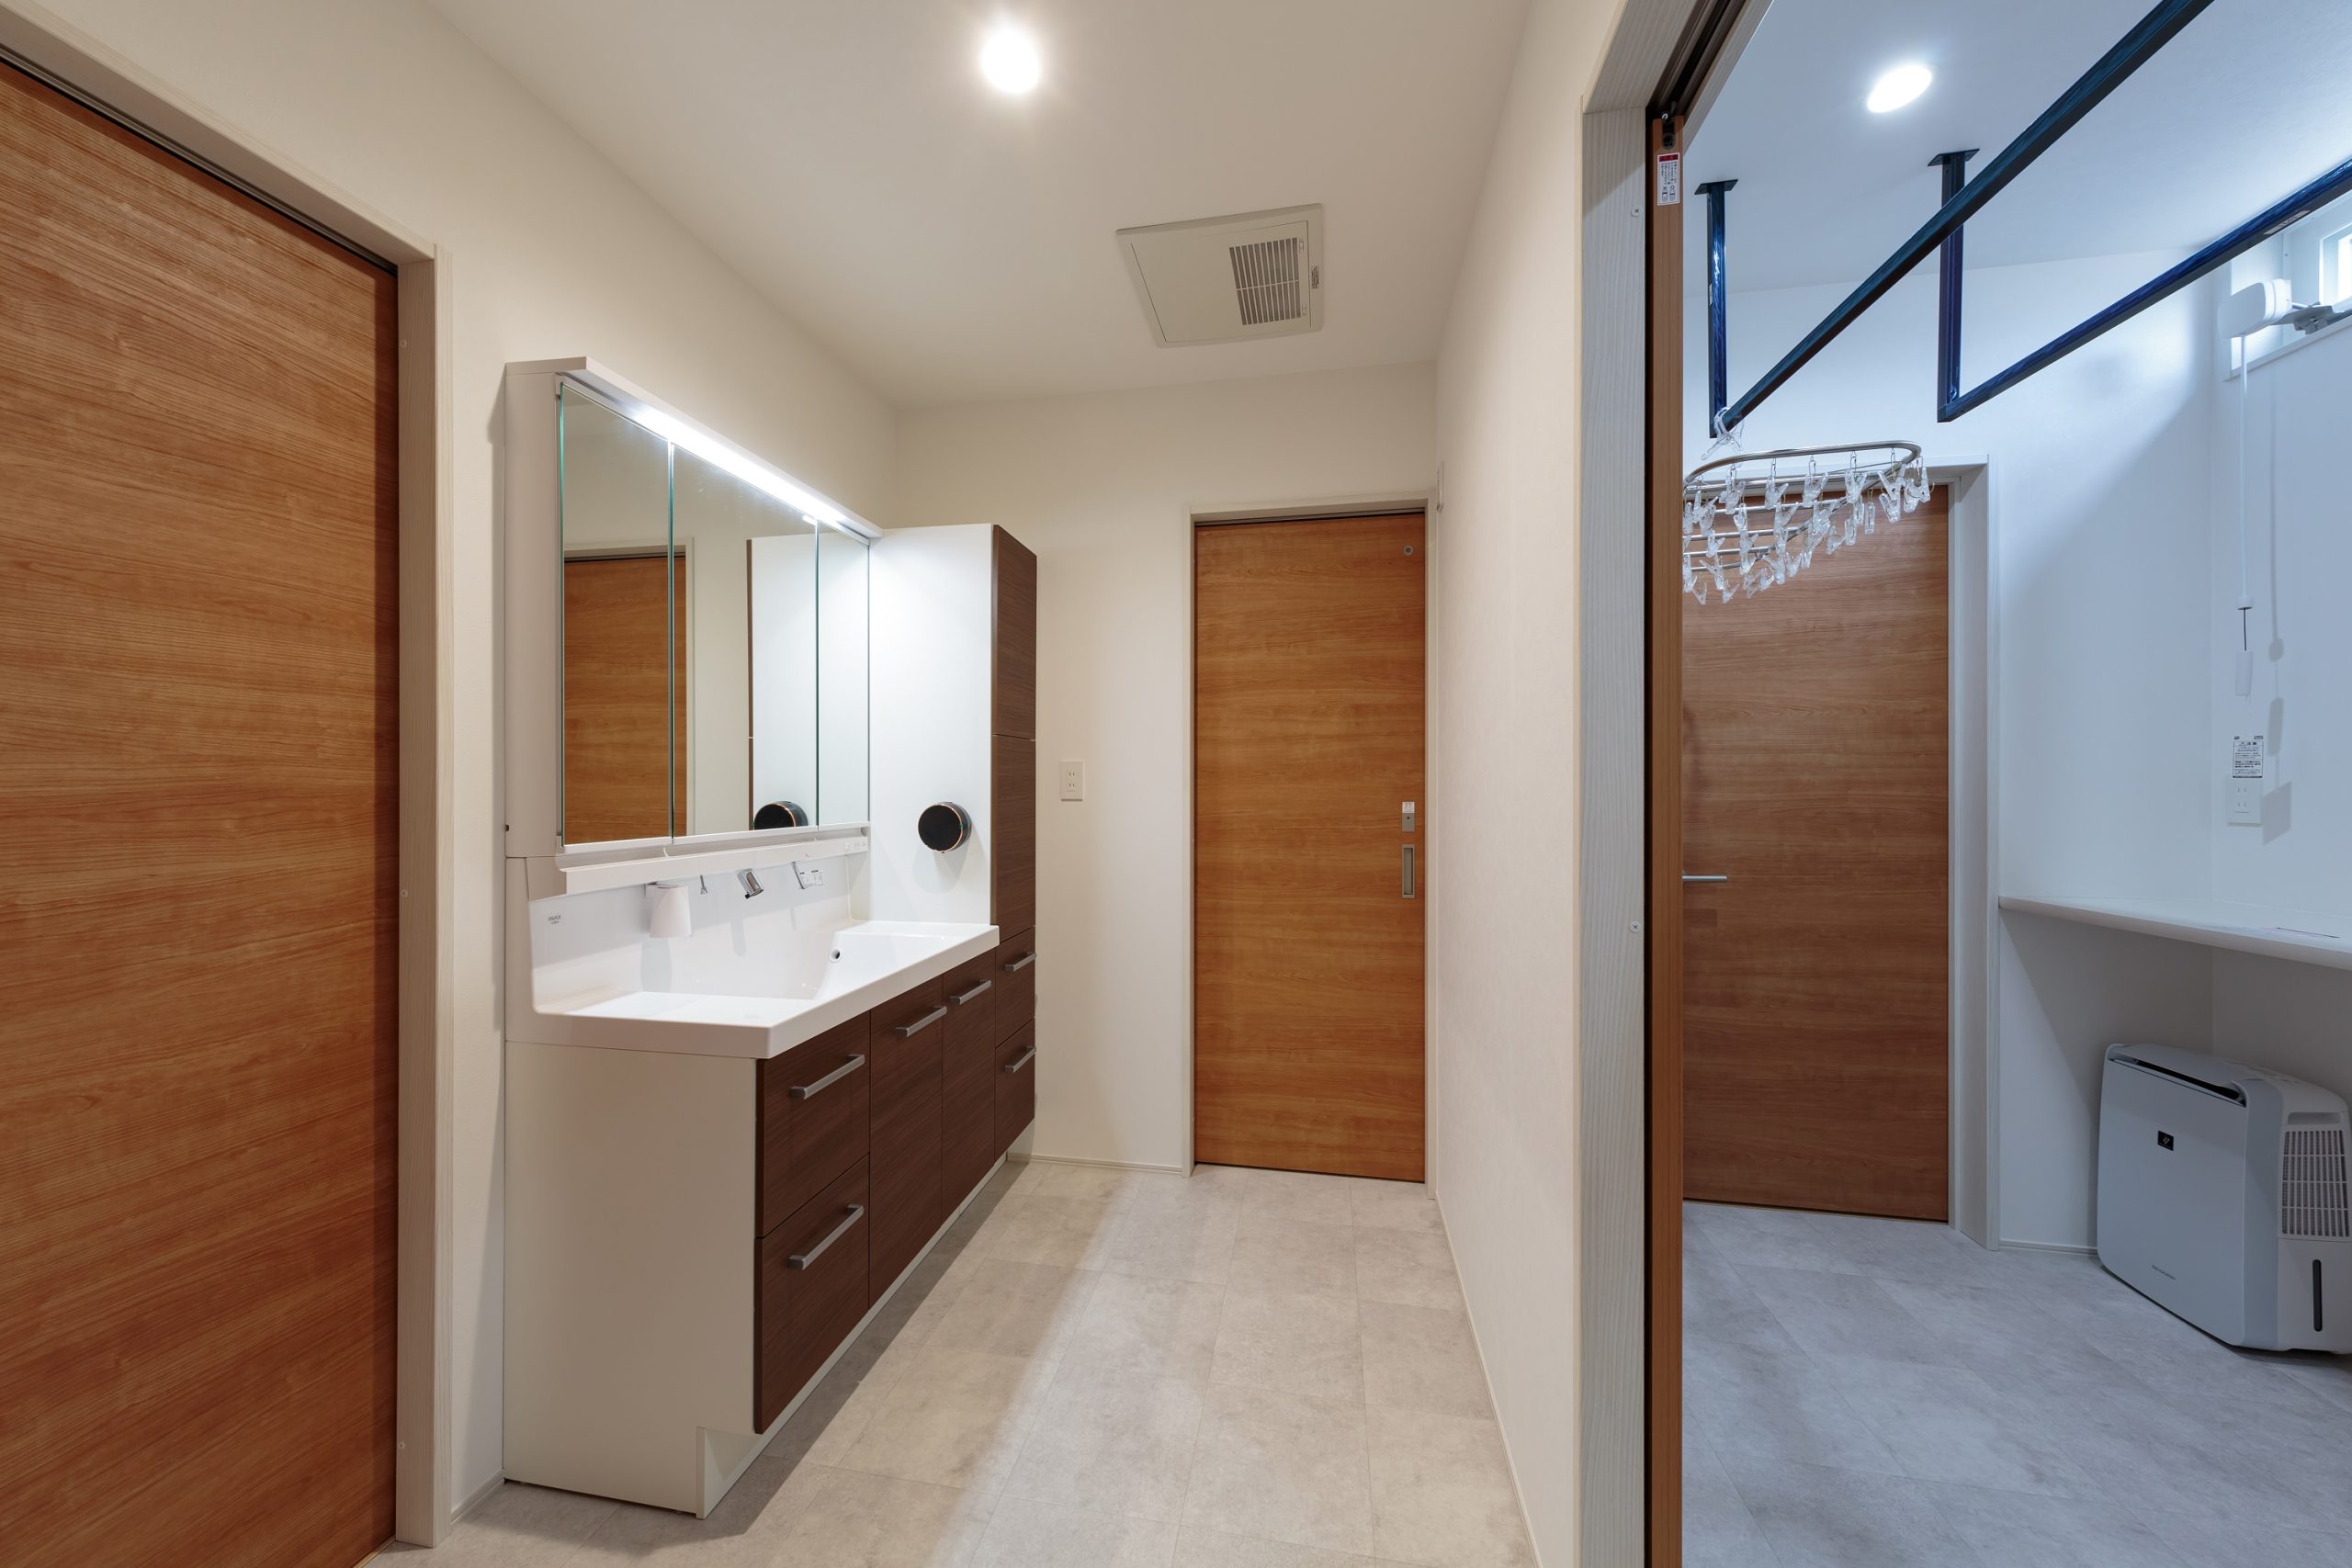 洗面室、脱衣室をランドリールームと分離したゆとりのある設計。それぞれの空間を広く使えて家事もはかどります